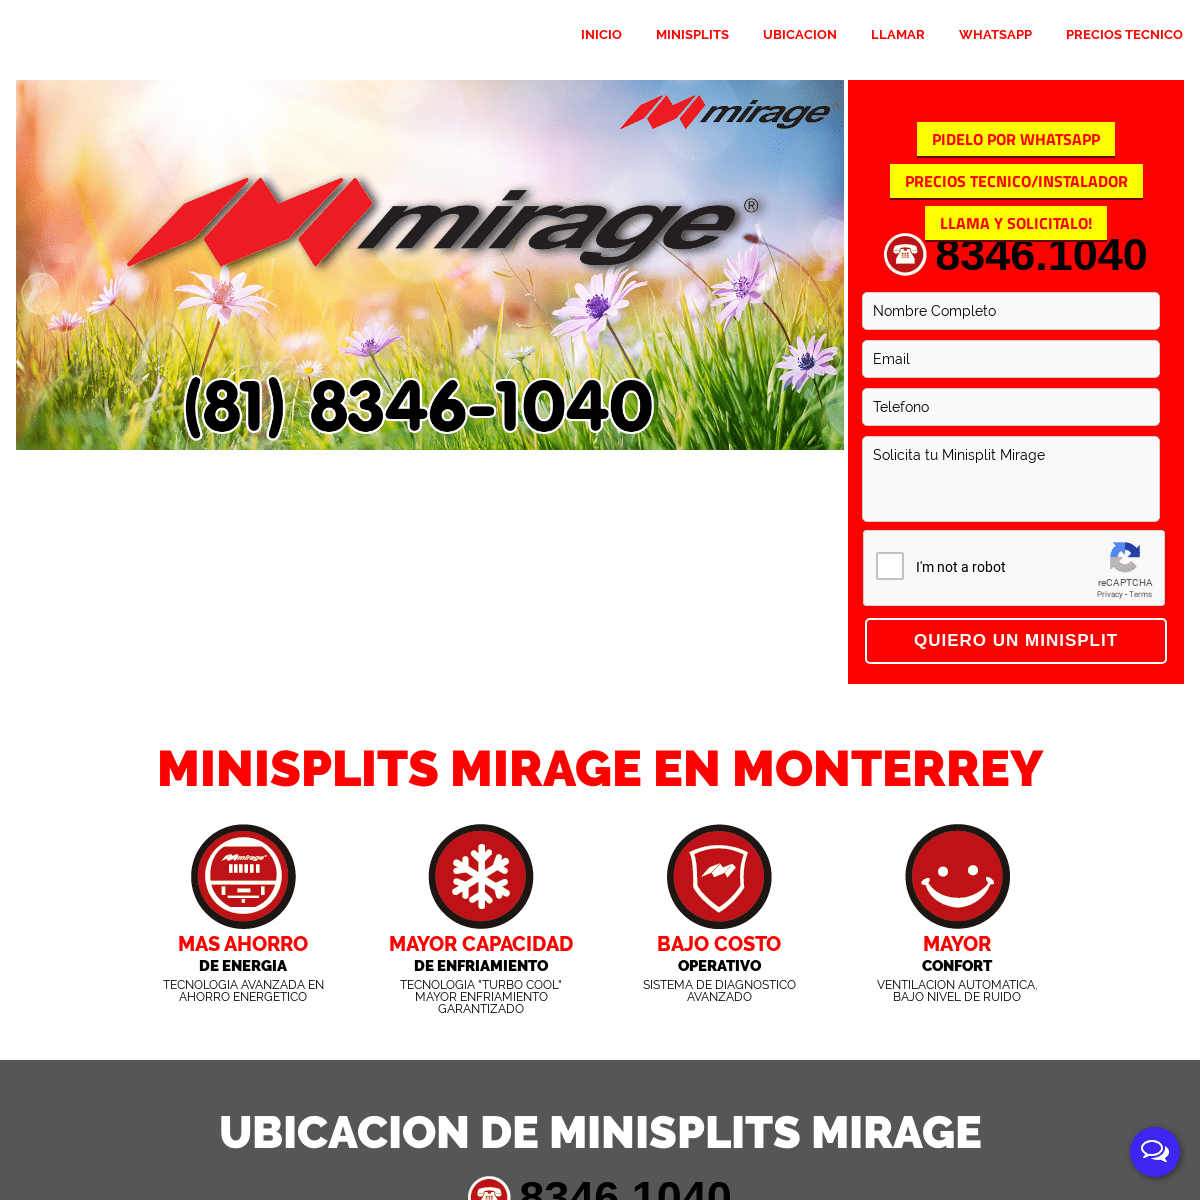 A complete backup of minisplitsmirage.com